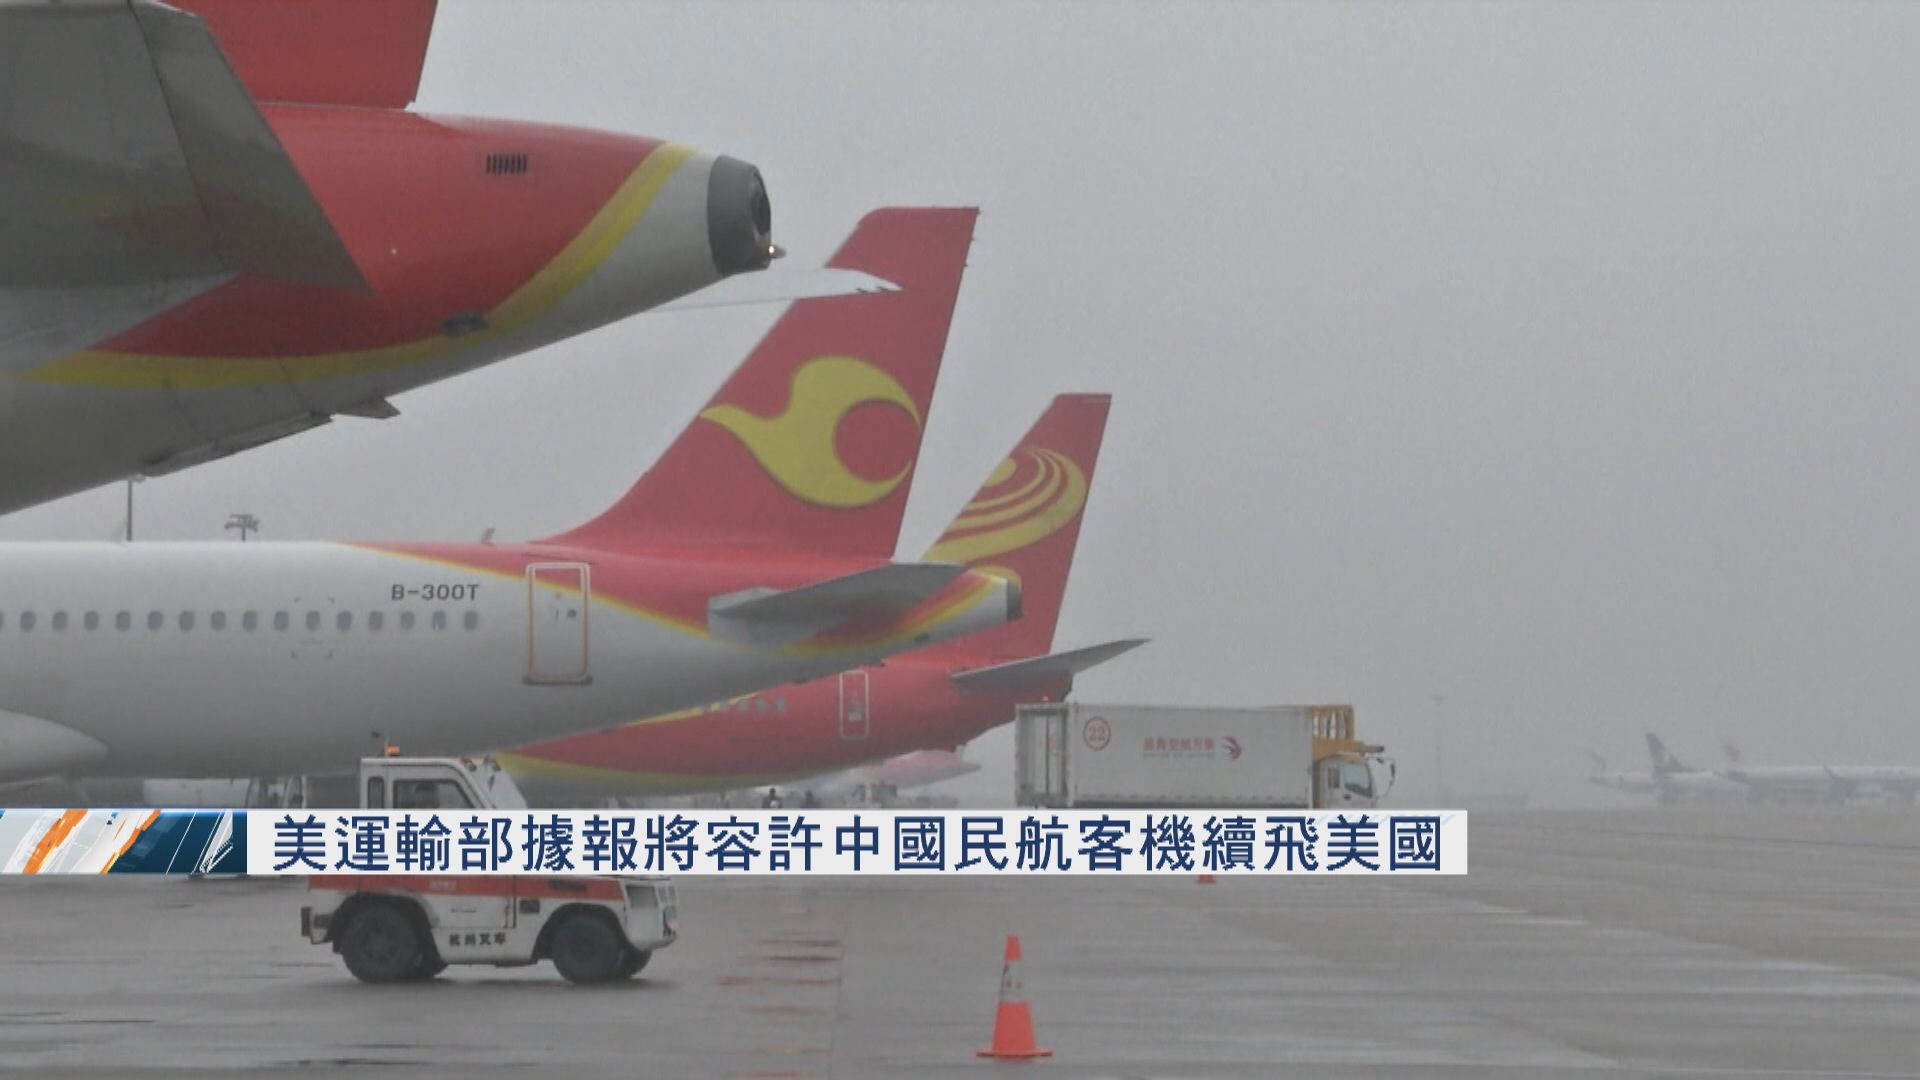 美國運輸部據報將容許中國民航客機續飛美國